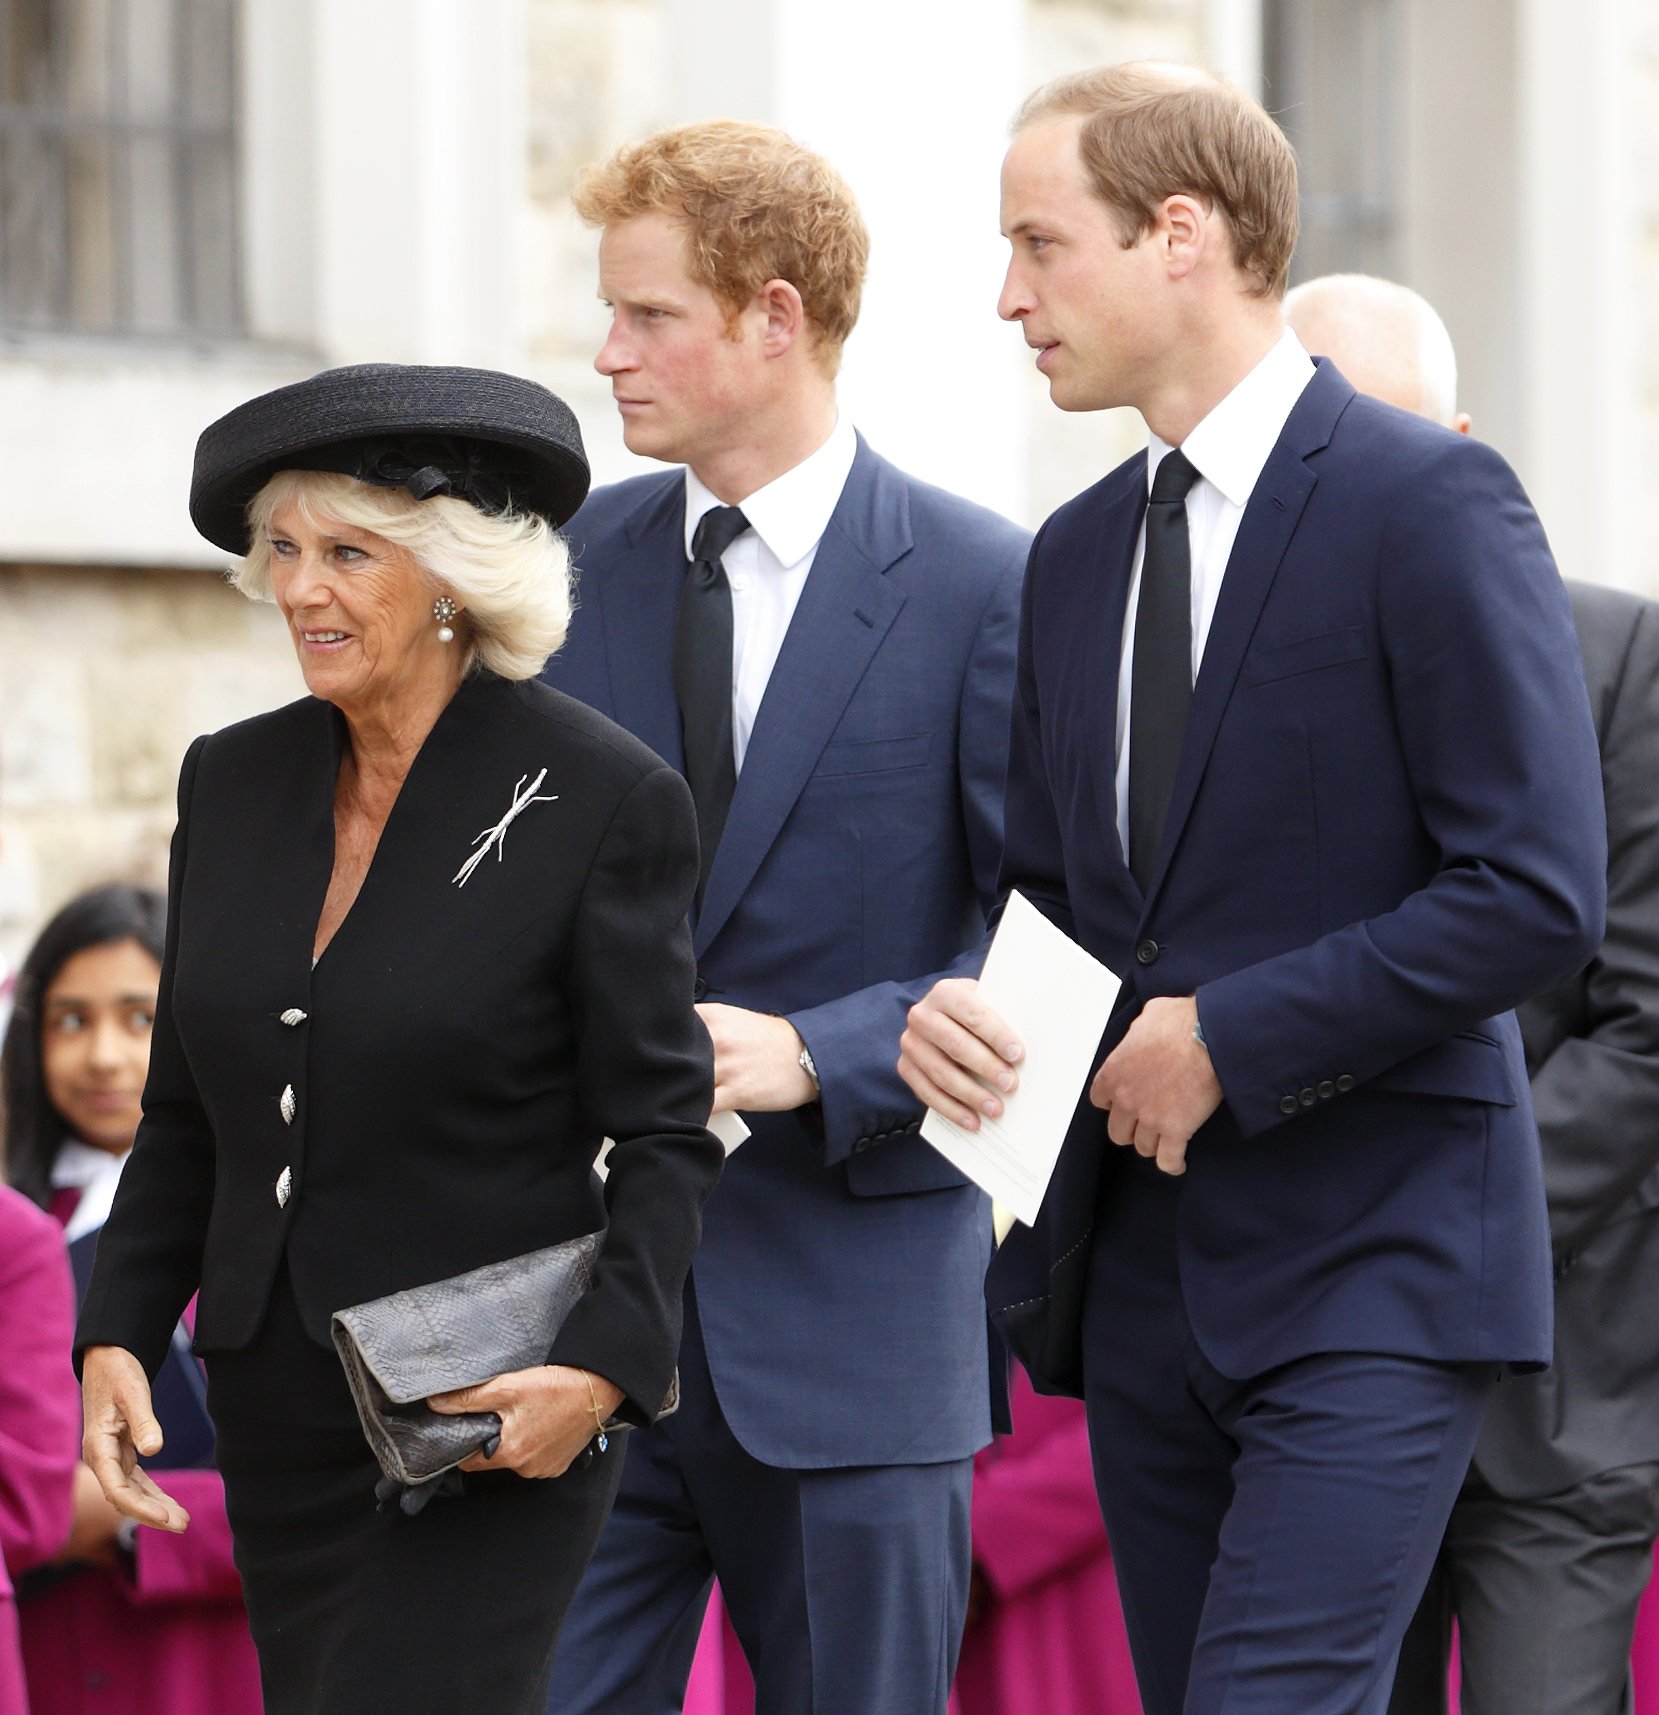 La reina consorte Camilla con el príncipe Harry y el príncipe William en Brentwood, Inglaterra, en 2013. | Foto: Getty Images